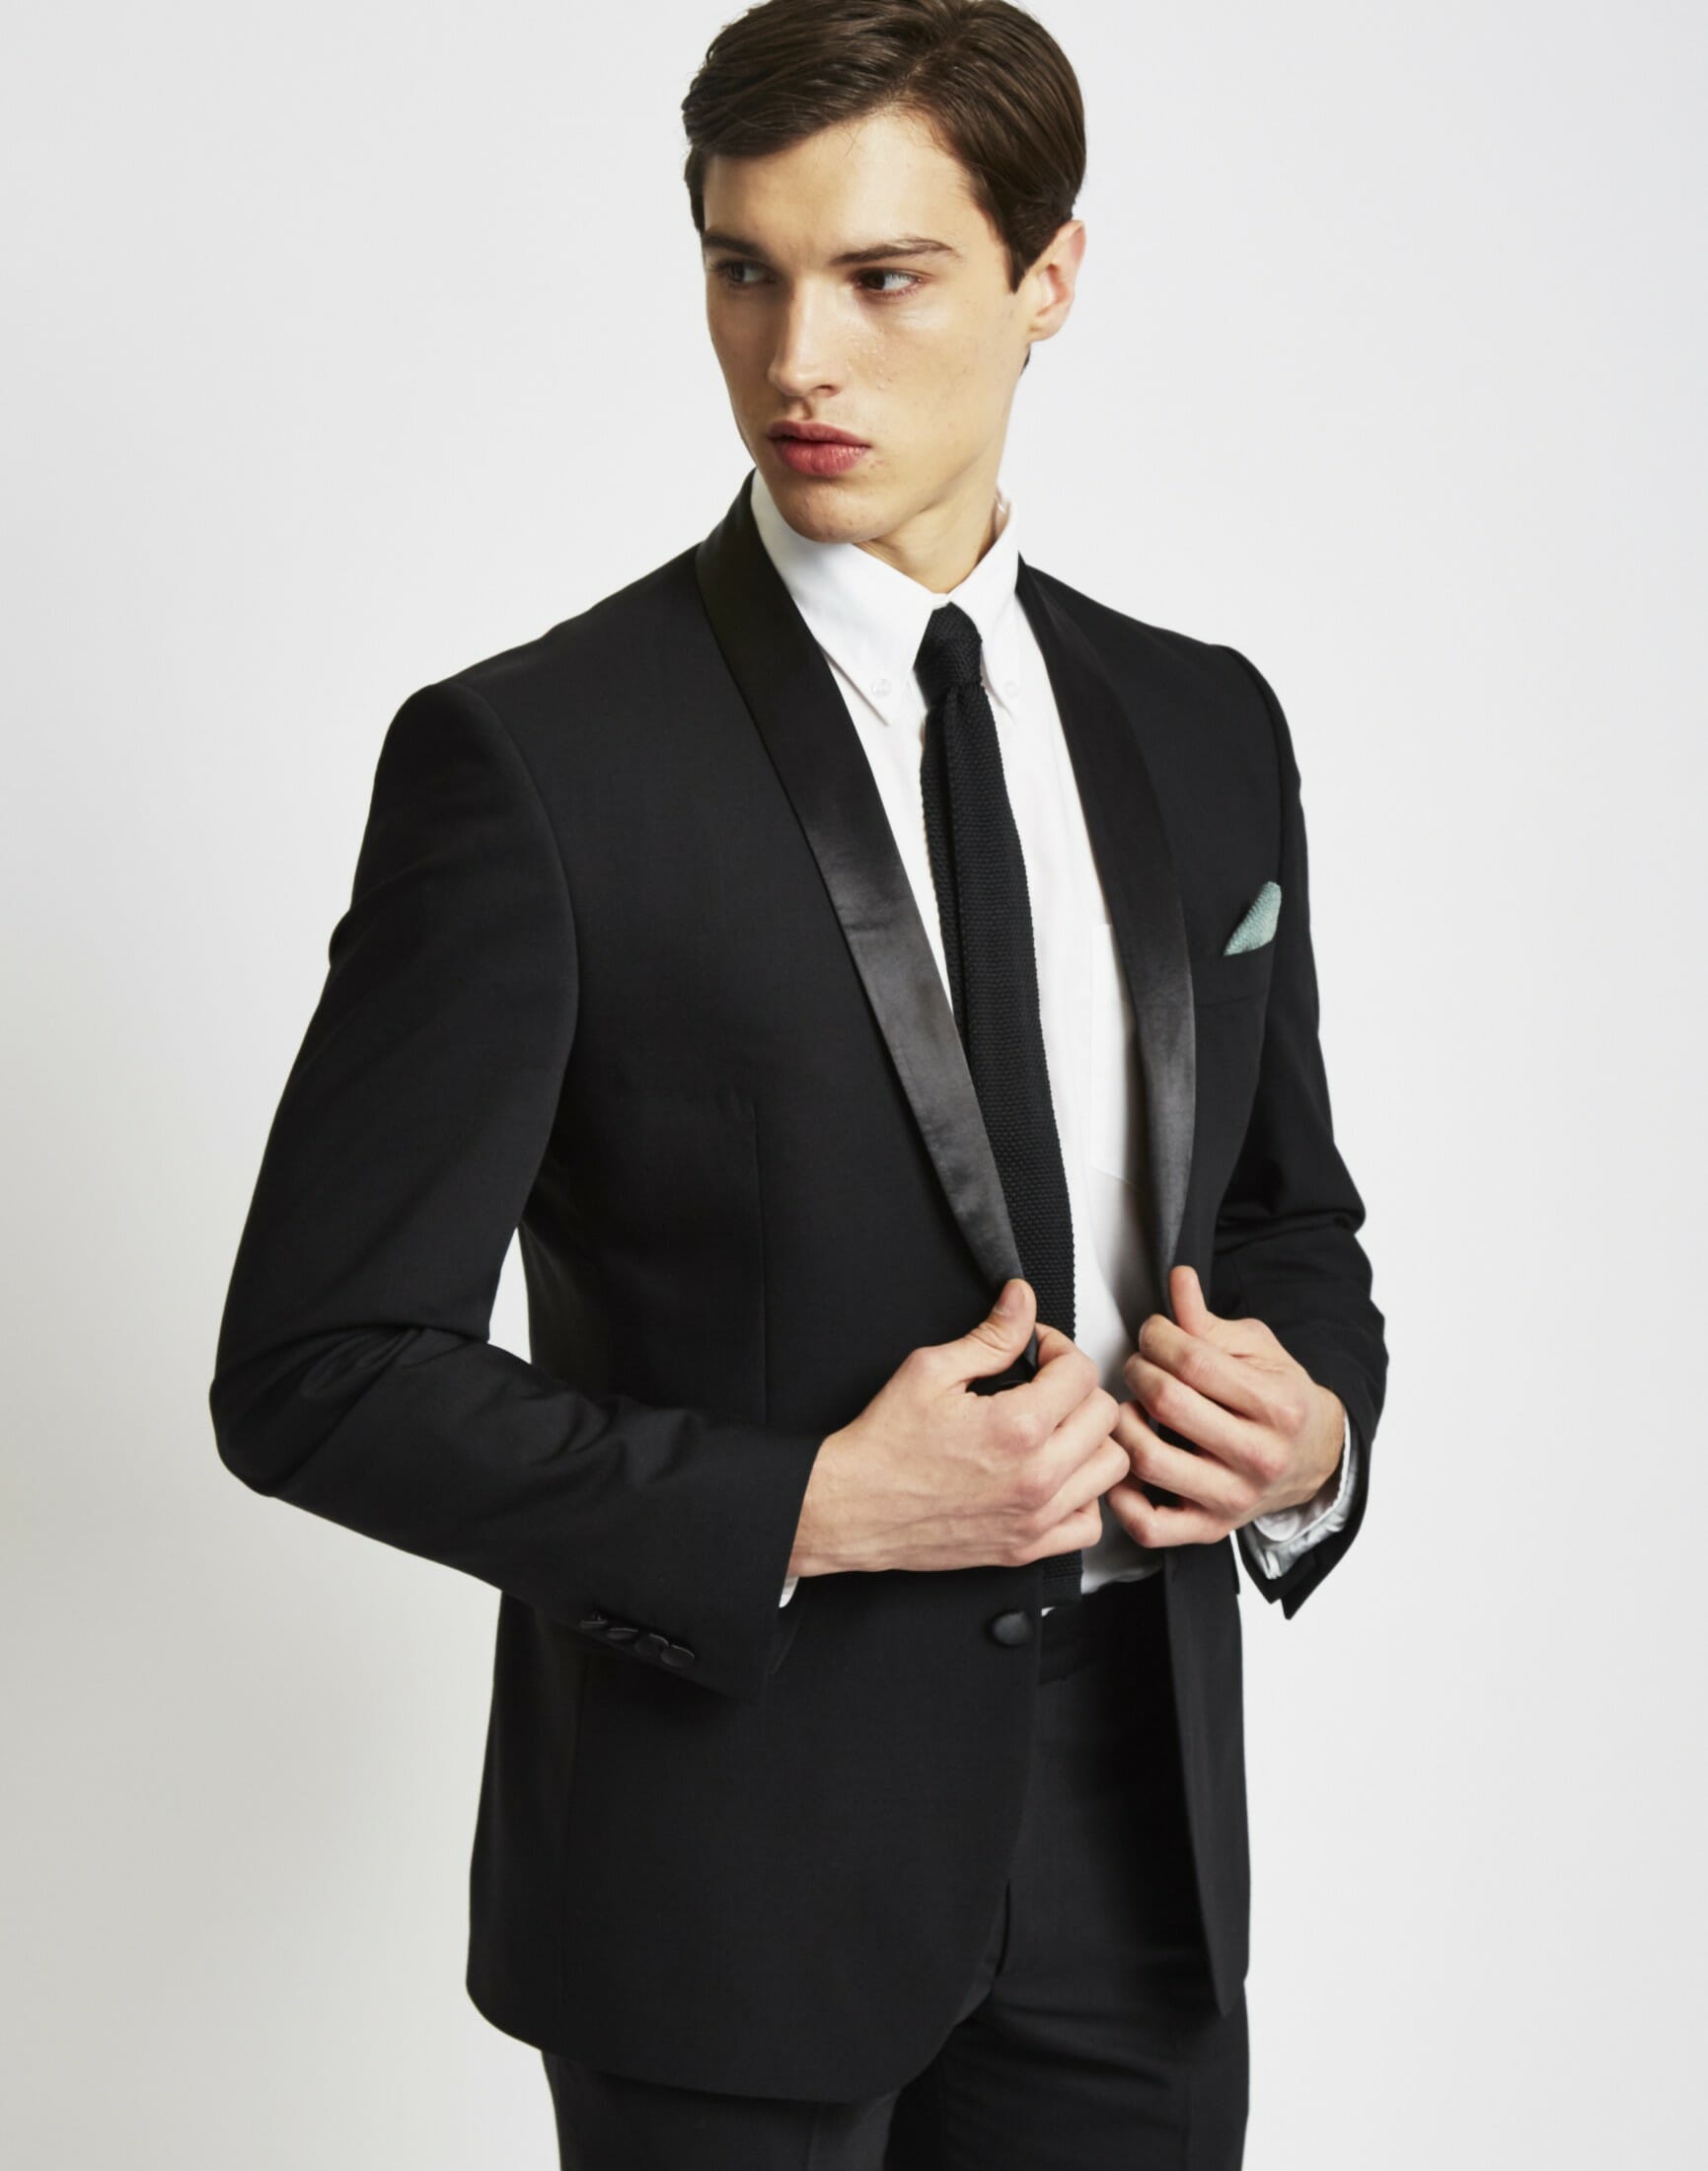 black tie optional wedding men